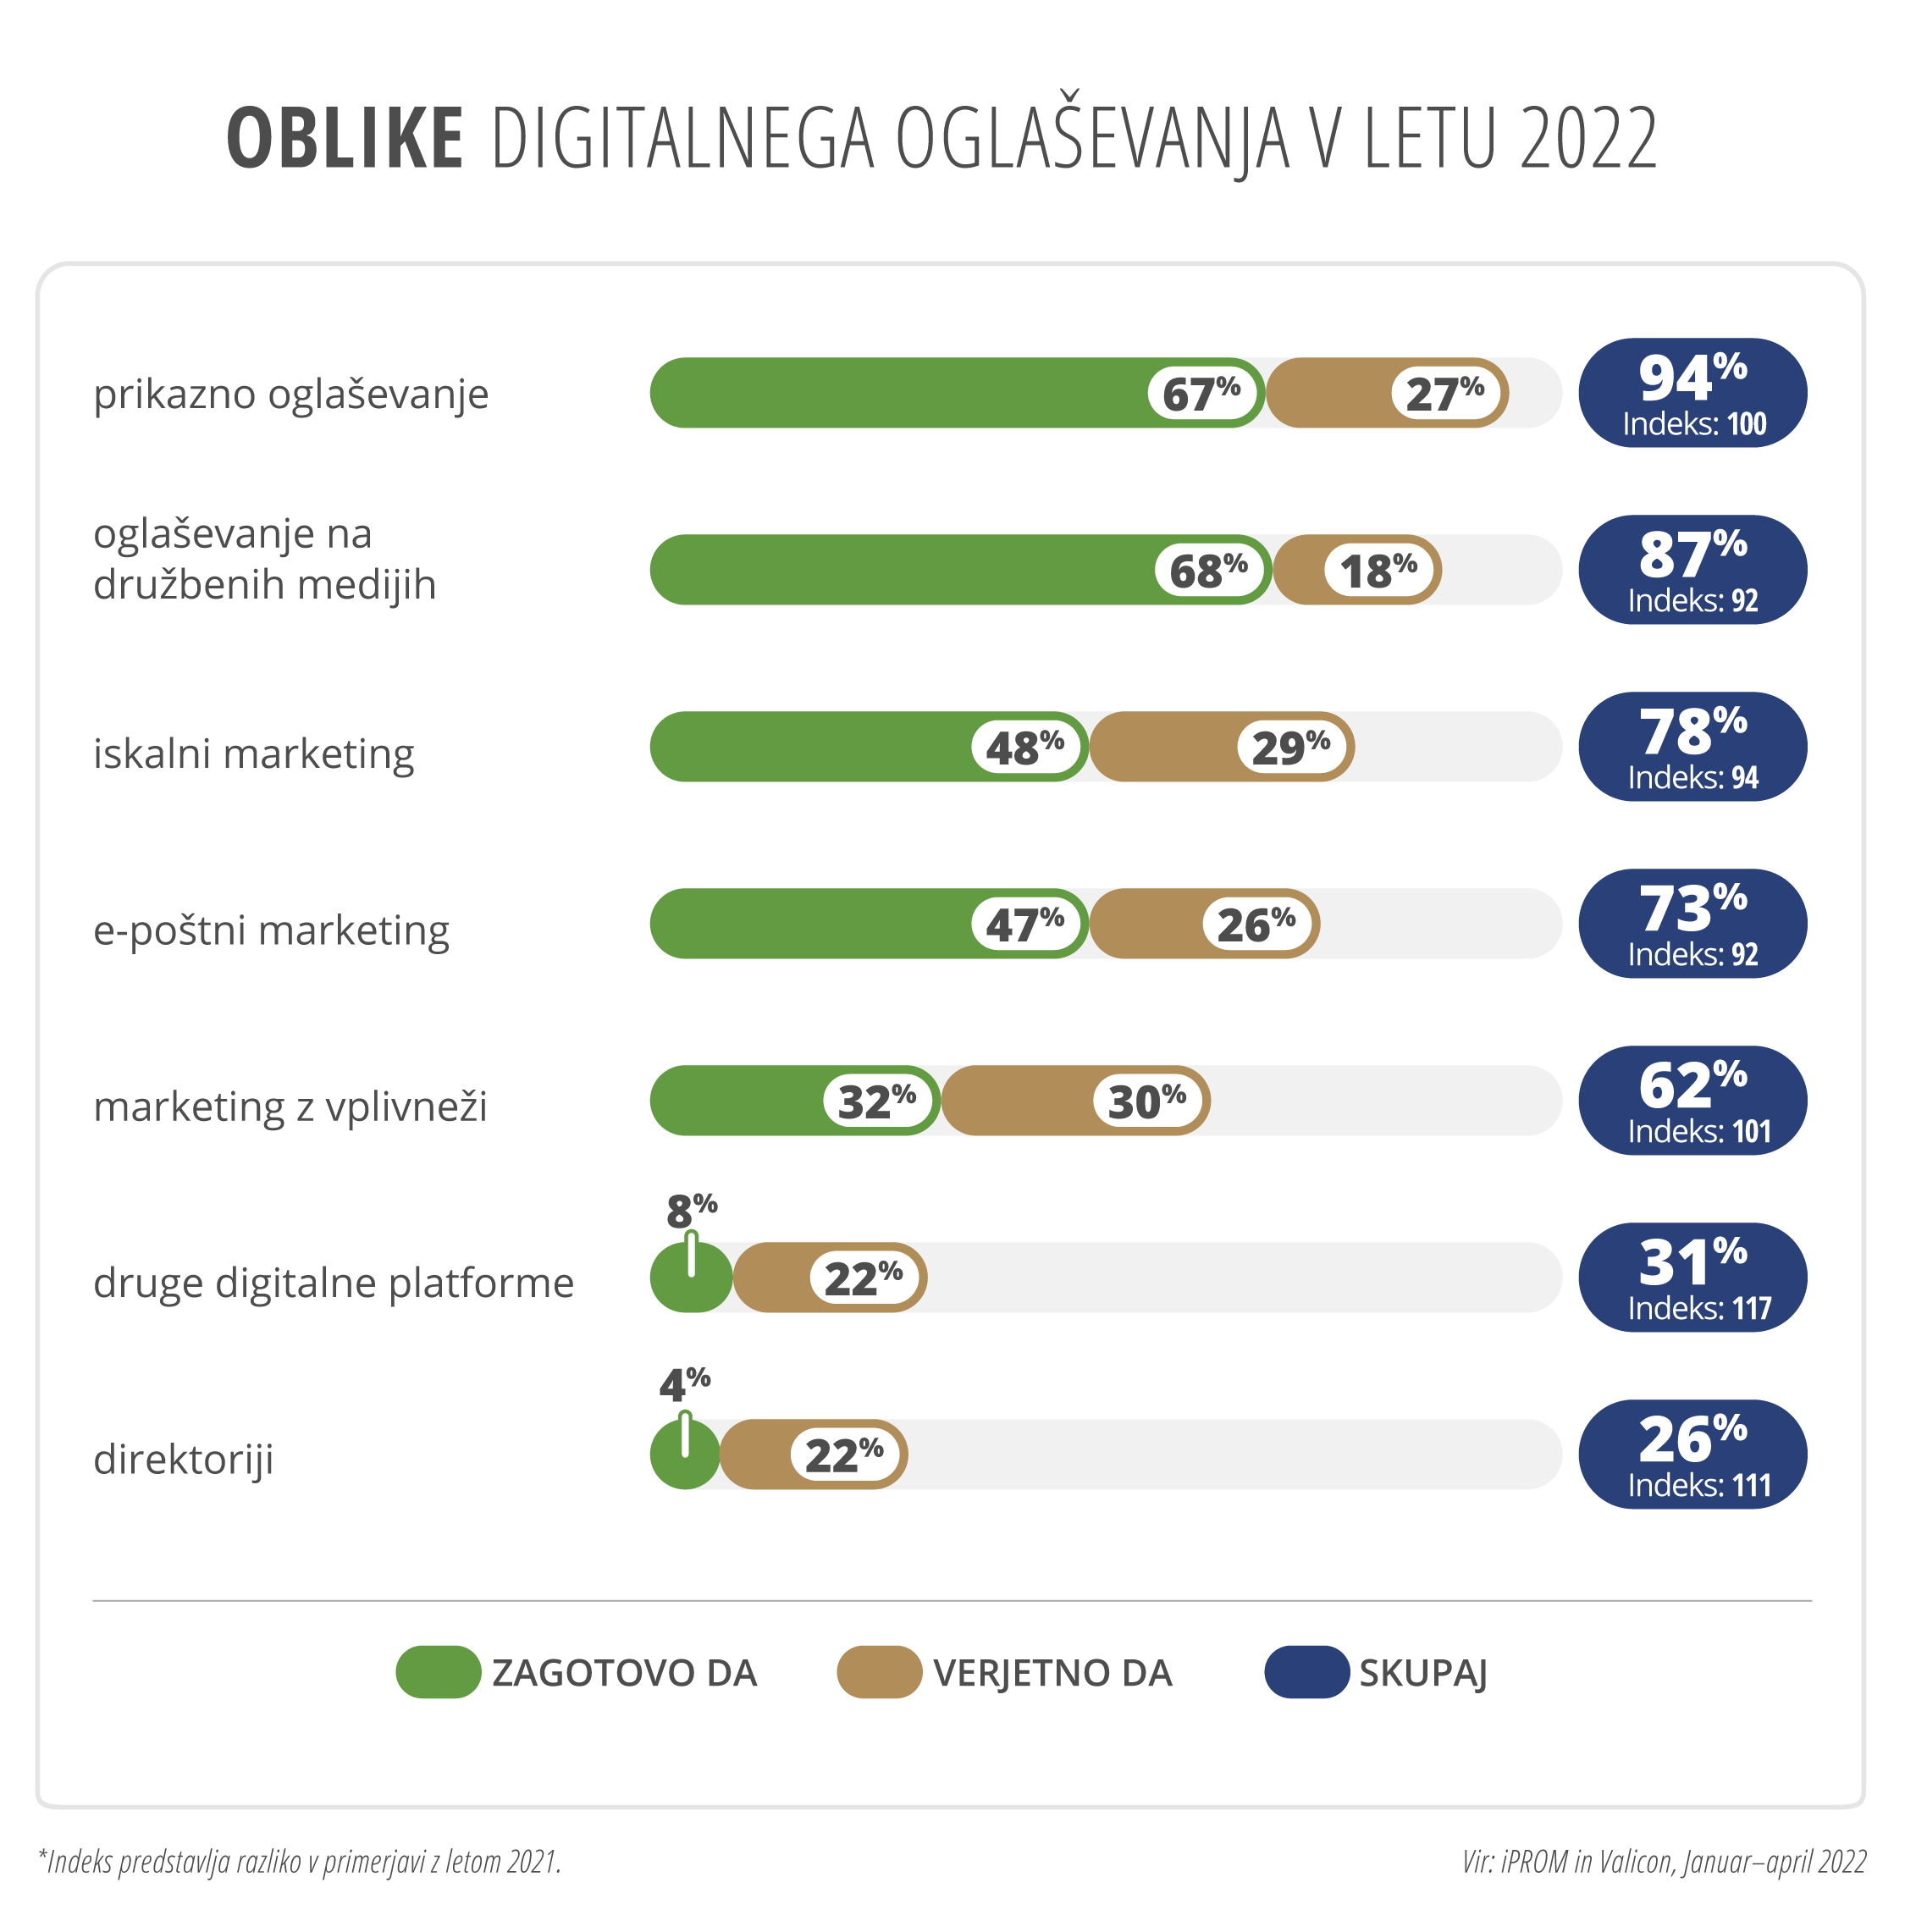 iPROM in Valicon - Digitalno oglaševanje v 2022: Oblike digitalnega oglaševanja v letu 2022 - iPROM - Sporočilo za medije